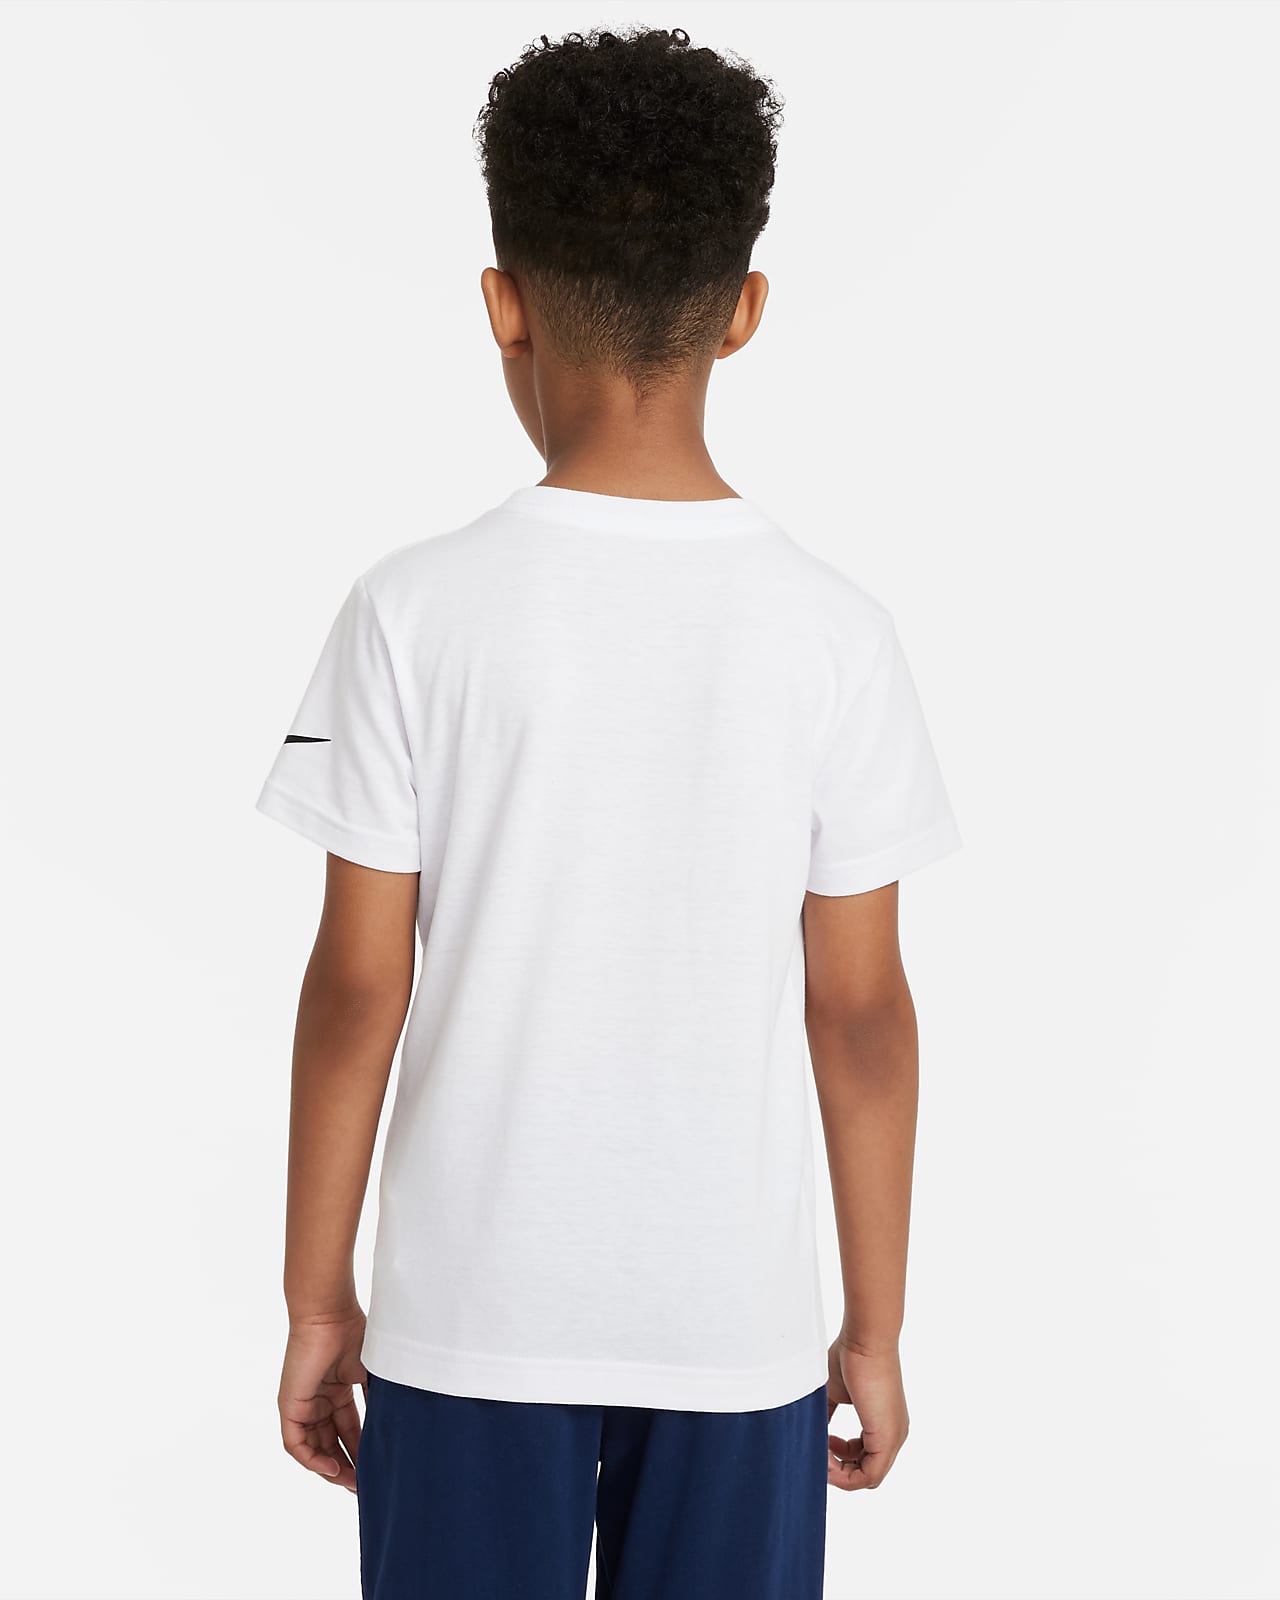 افضل كوكيز بالرياض Nike Little Kids' T-Shirt افضل كوكيز بالرياض